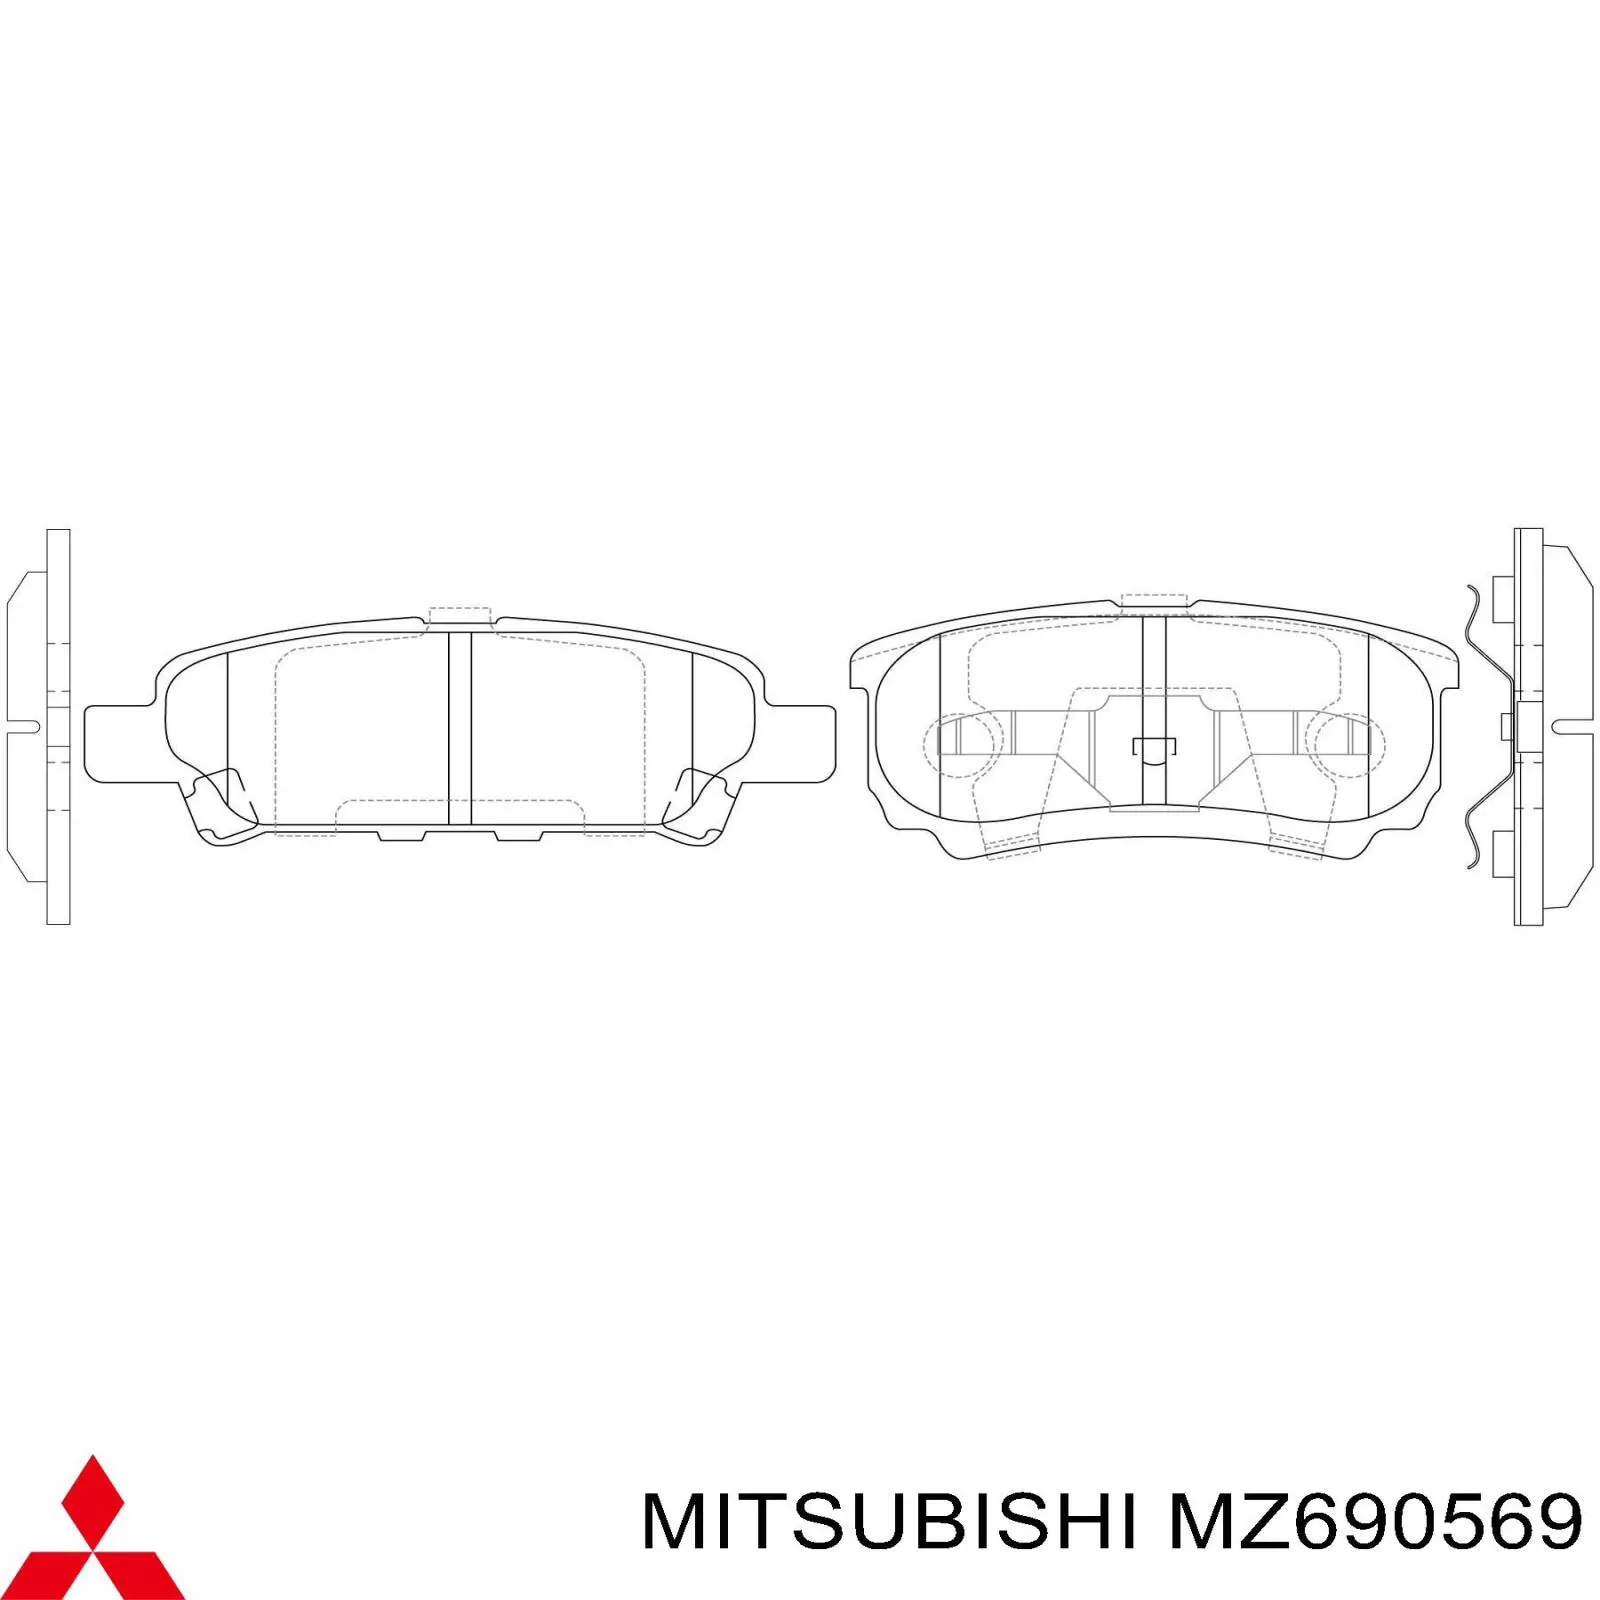 MZ690569 Mitsubishi pastillas de freno traseras